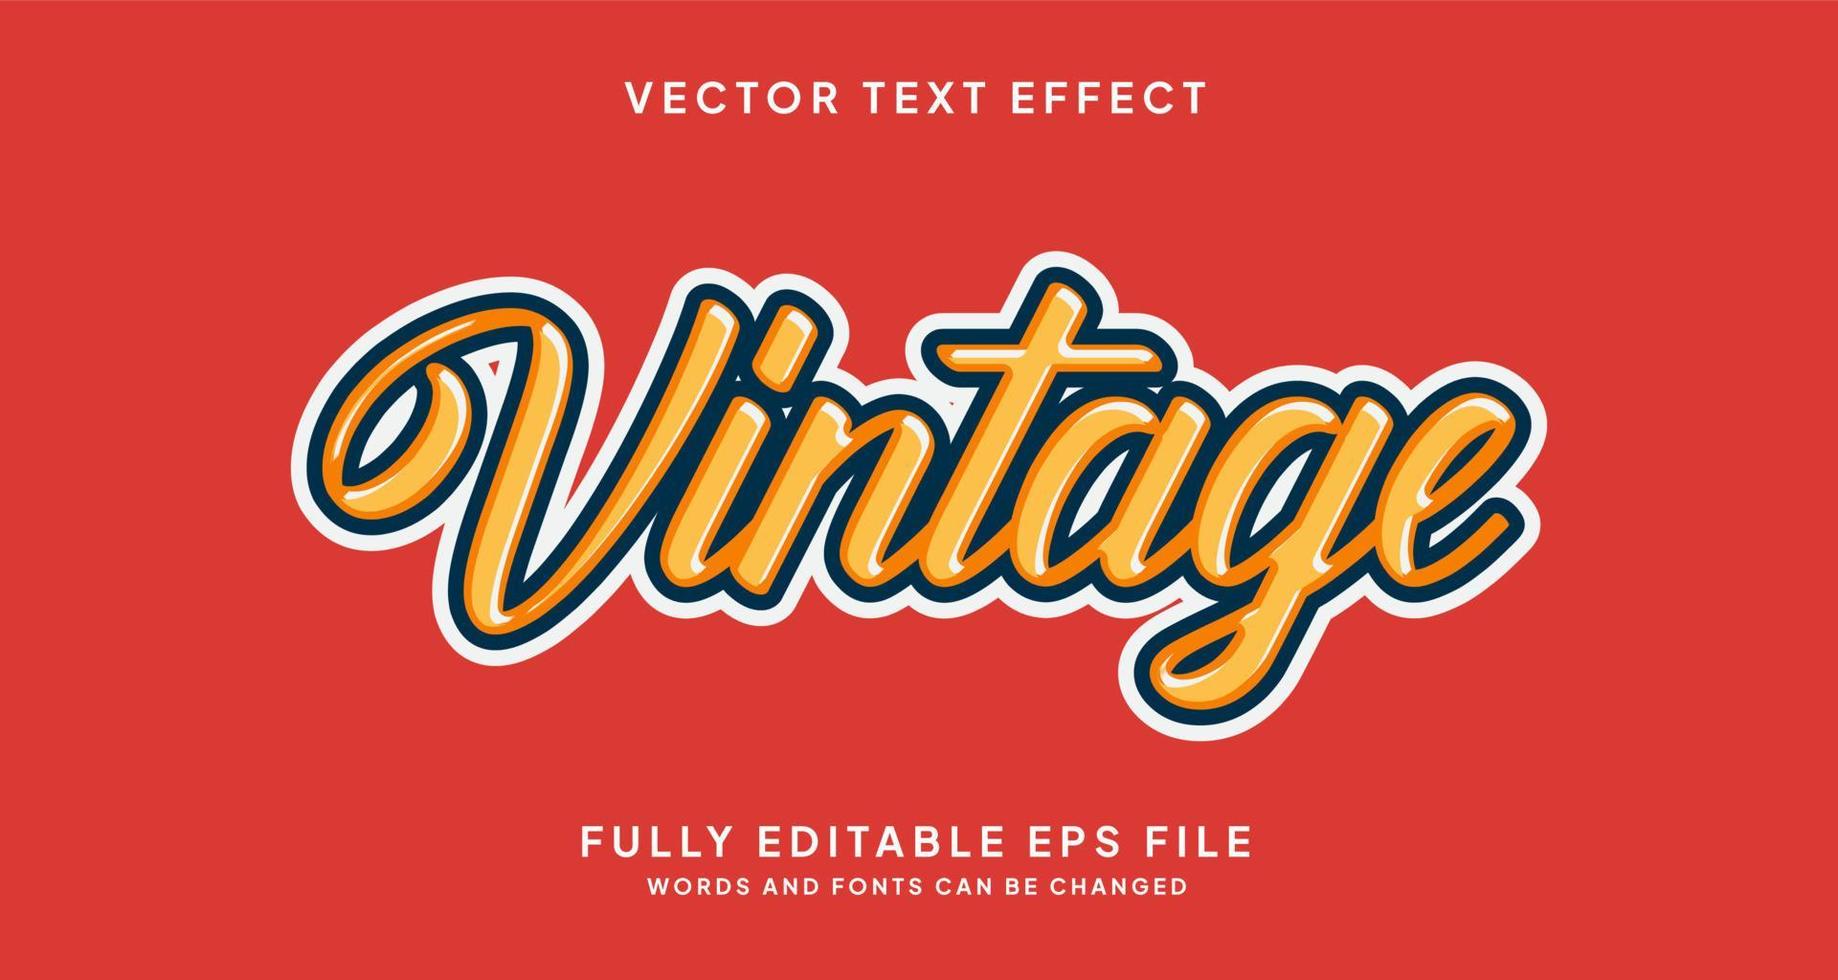 efecto de texto editable estilo vintage vector